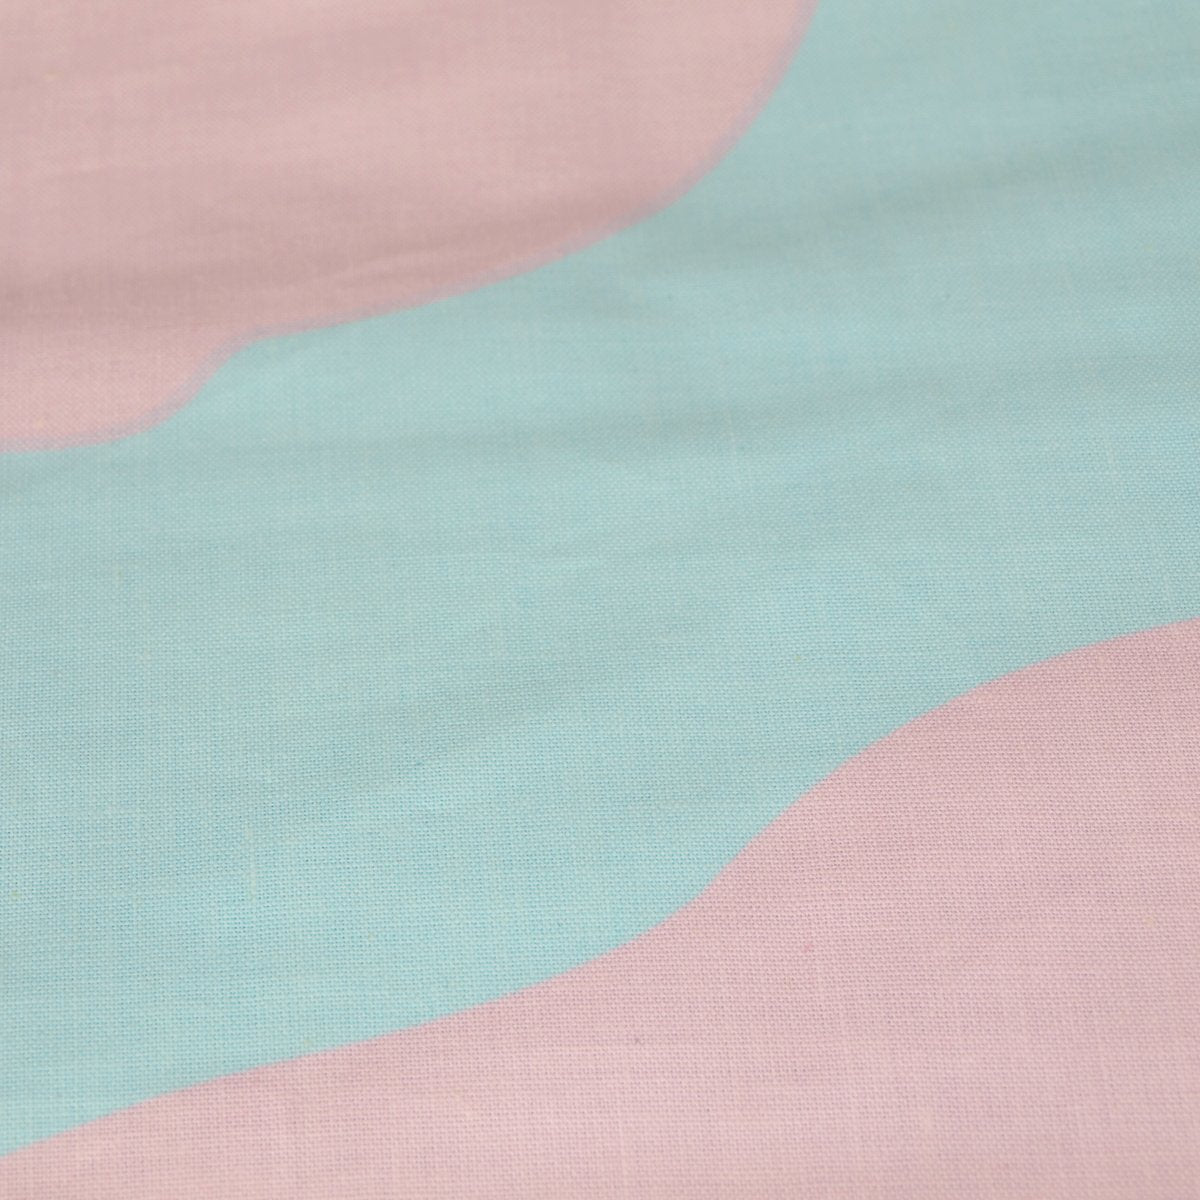 Lily & Lulu - Blue/Pink, Sheet Set